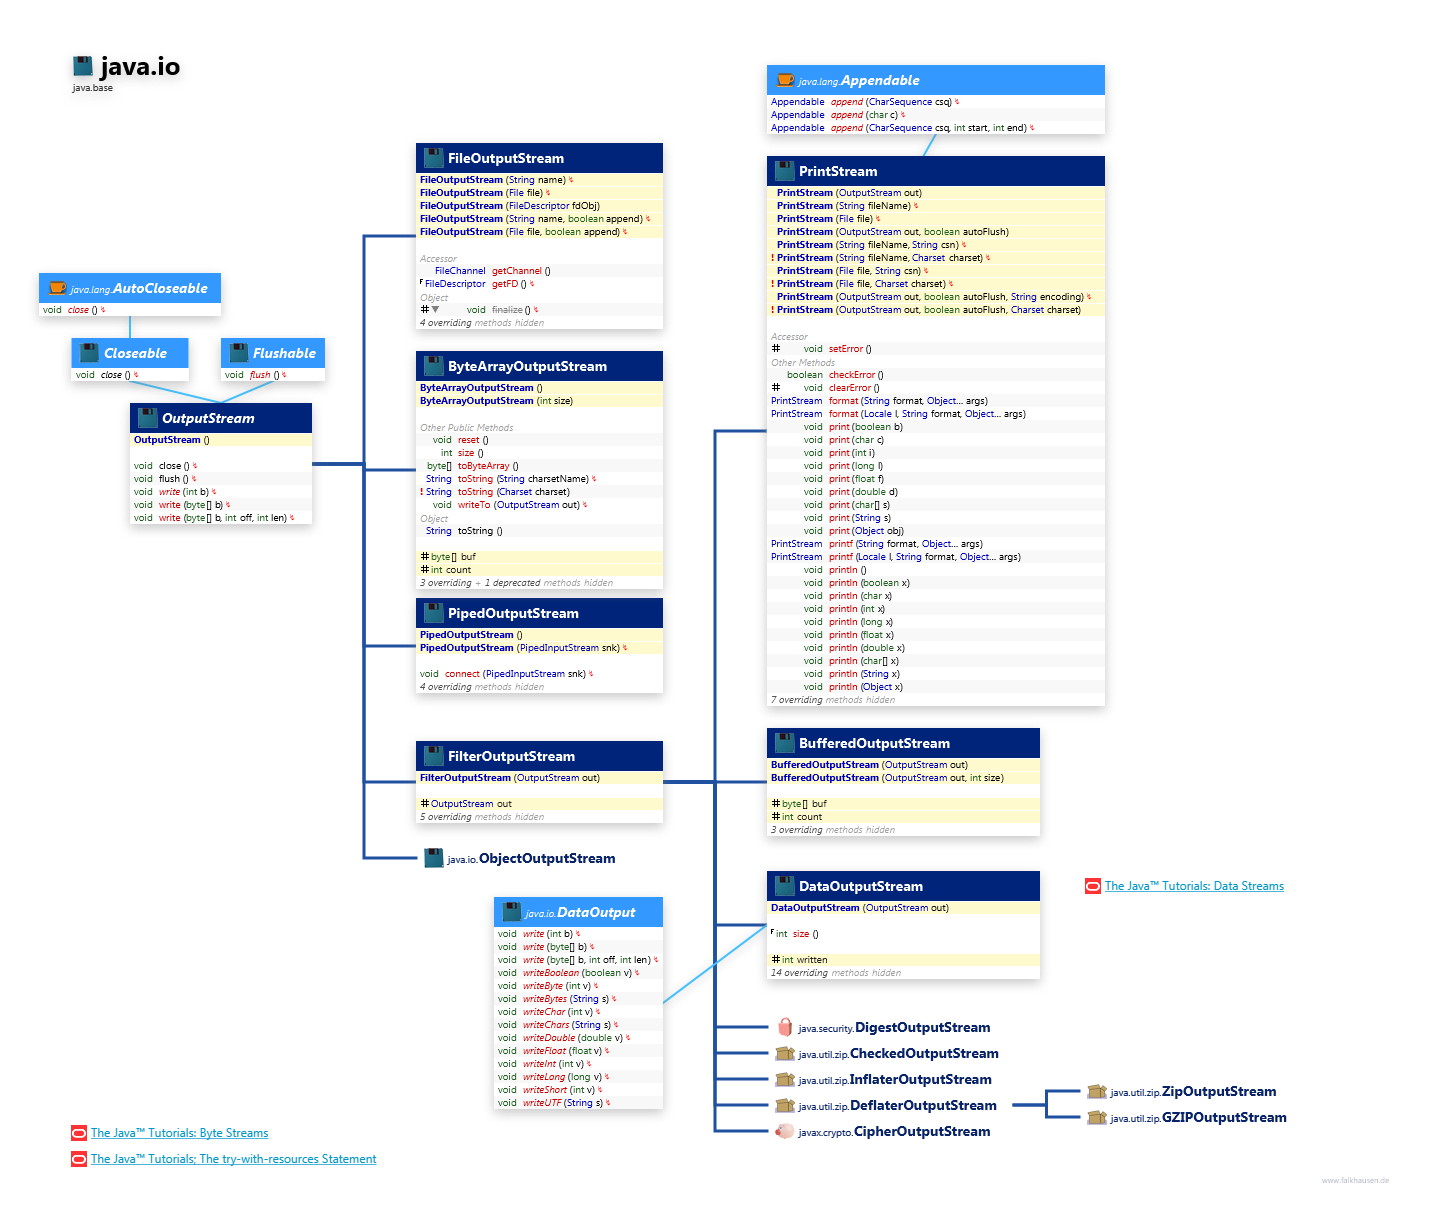 java.io OutputStream class diagram and api documentation for Java 10